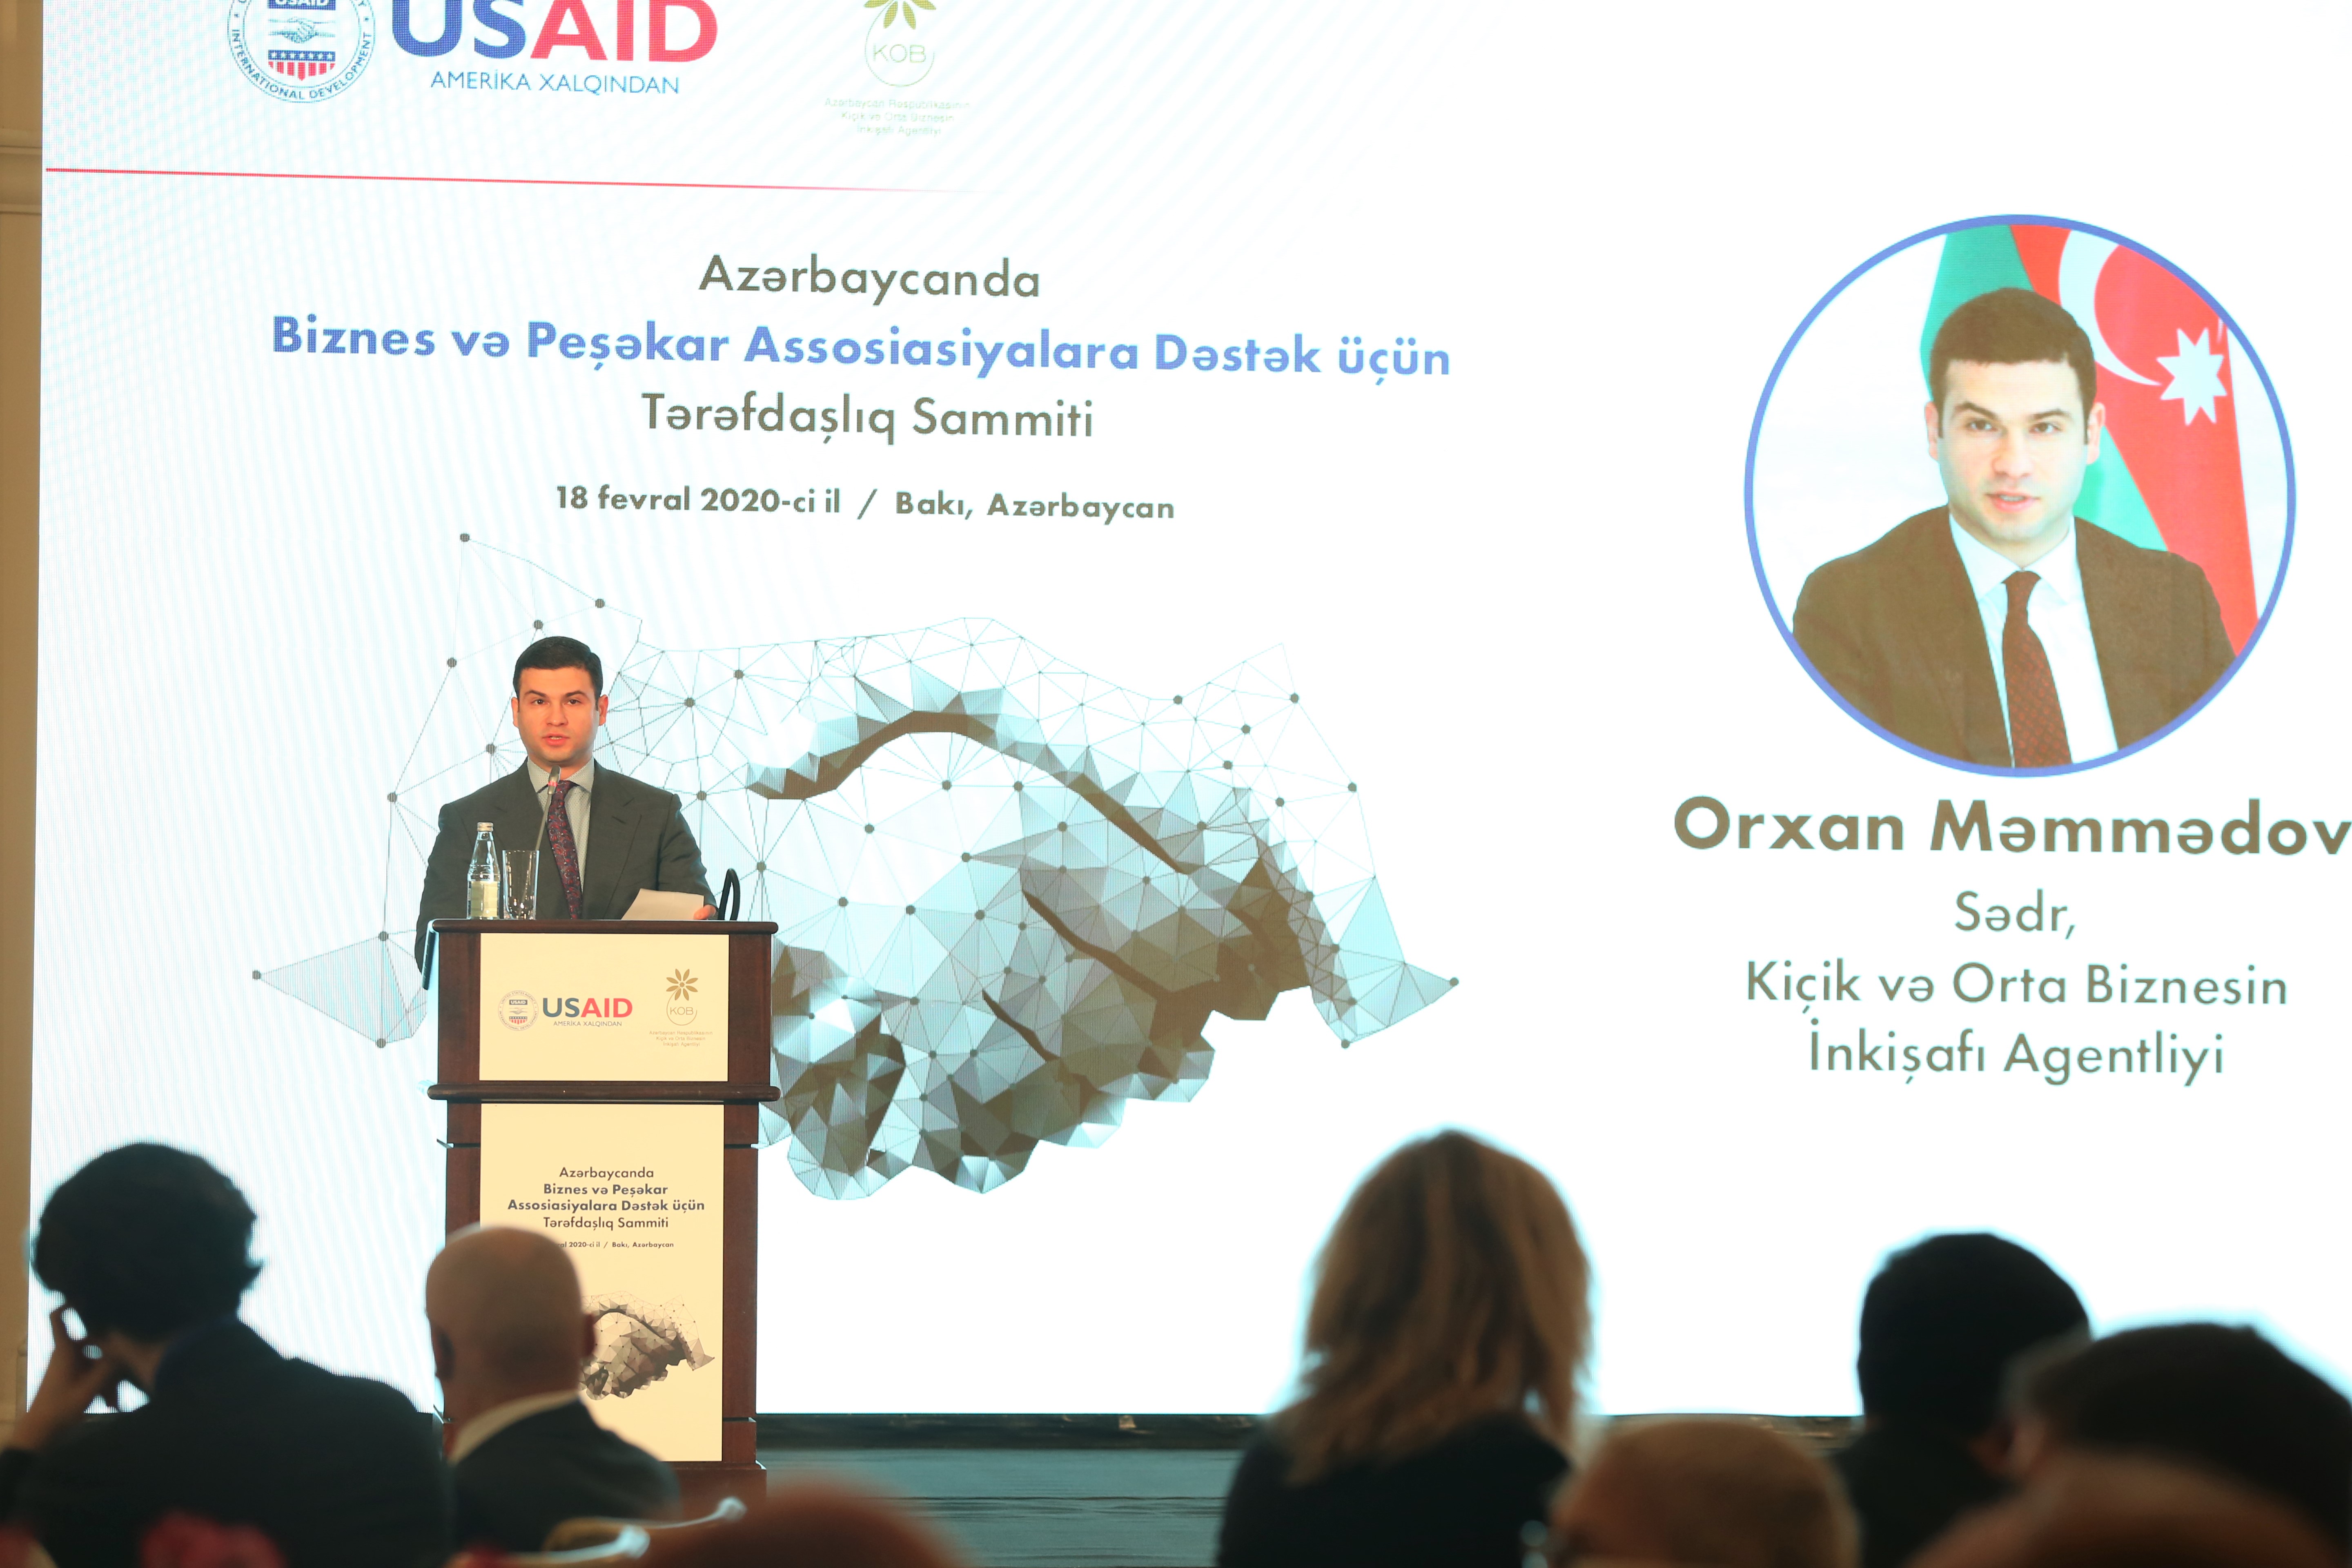 Агентство по развитию МСБ и USAİD выступили с новой инициативой по поддержке бизнес-ассоциаций 